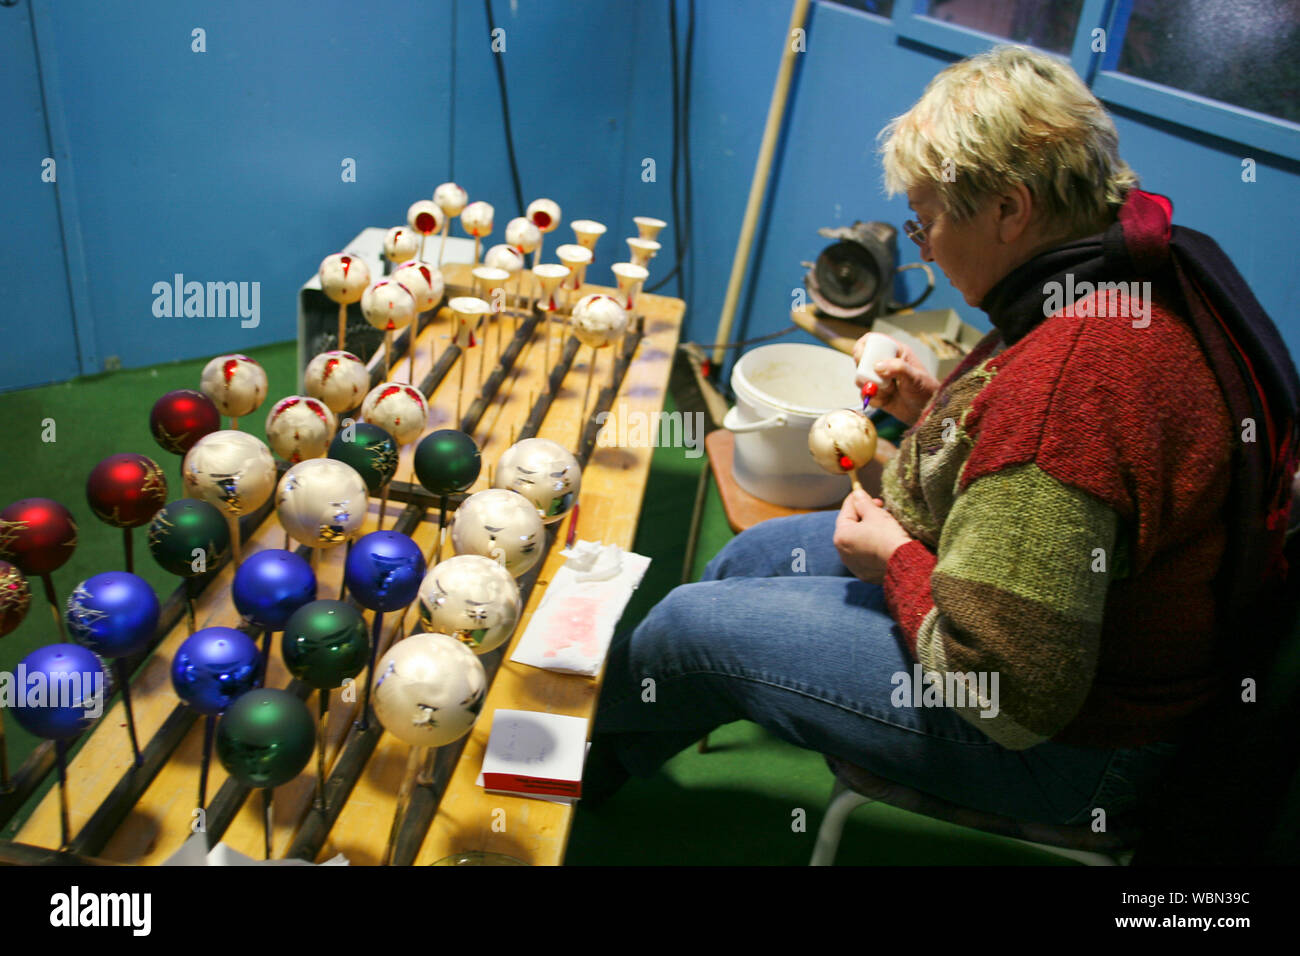 Foire de Noël LÜBECK ALLEMAGNE femme peint des balles pour les décorations de Noël Banque D'Images